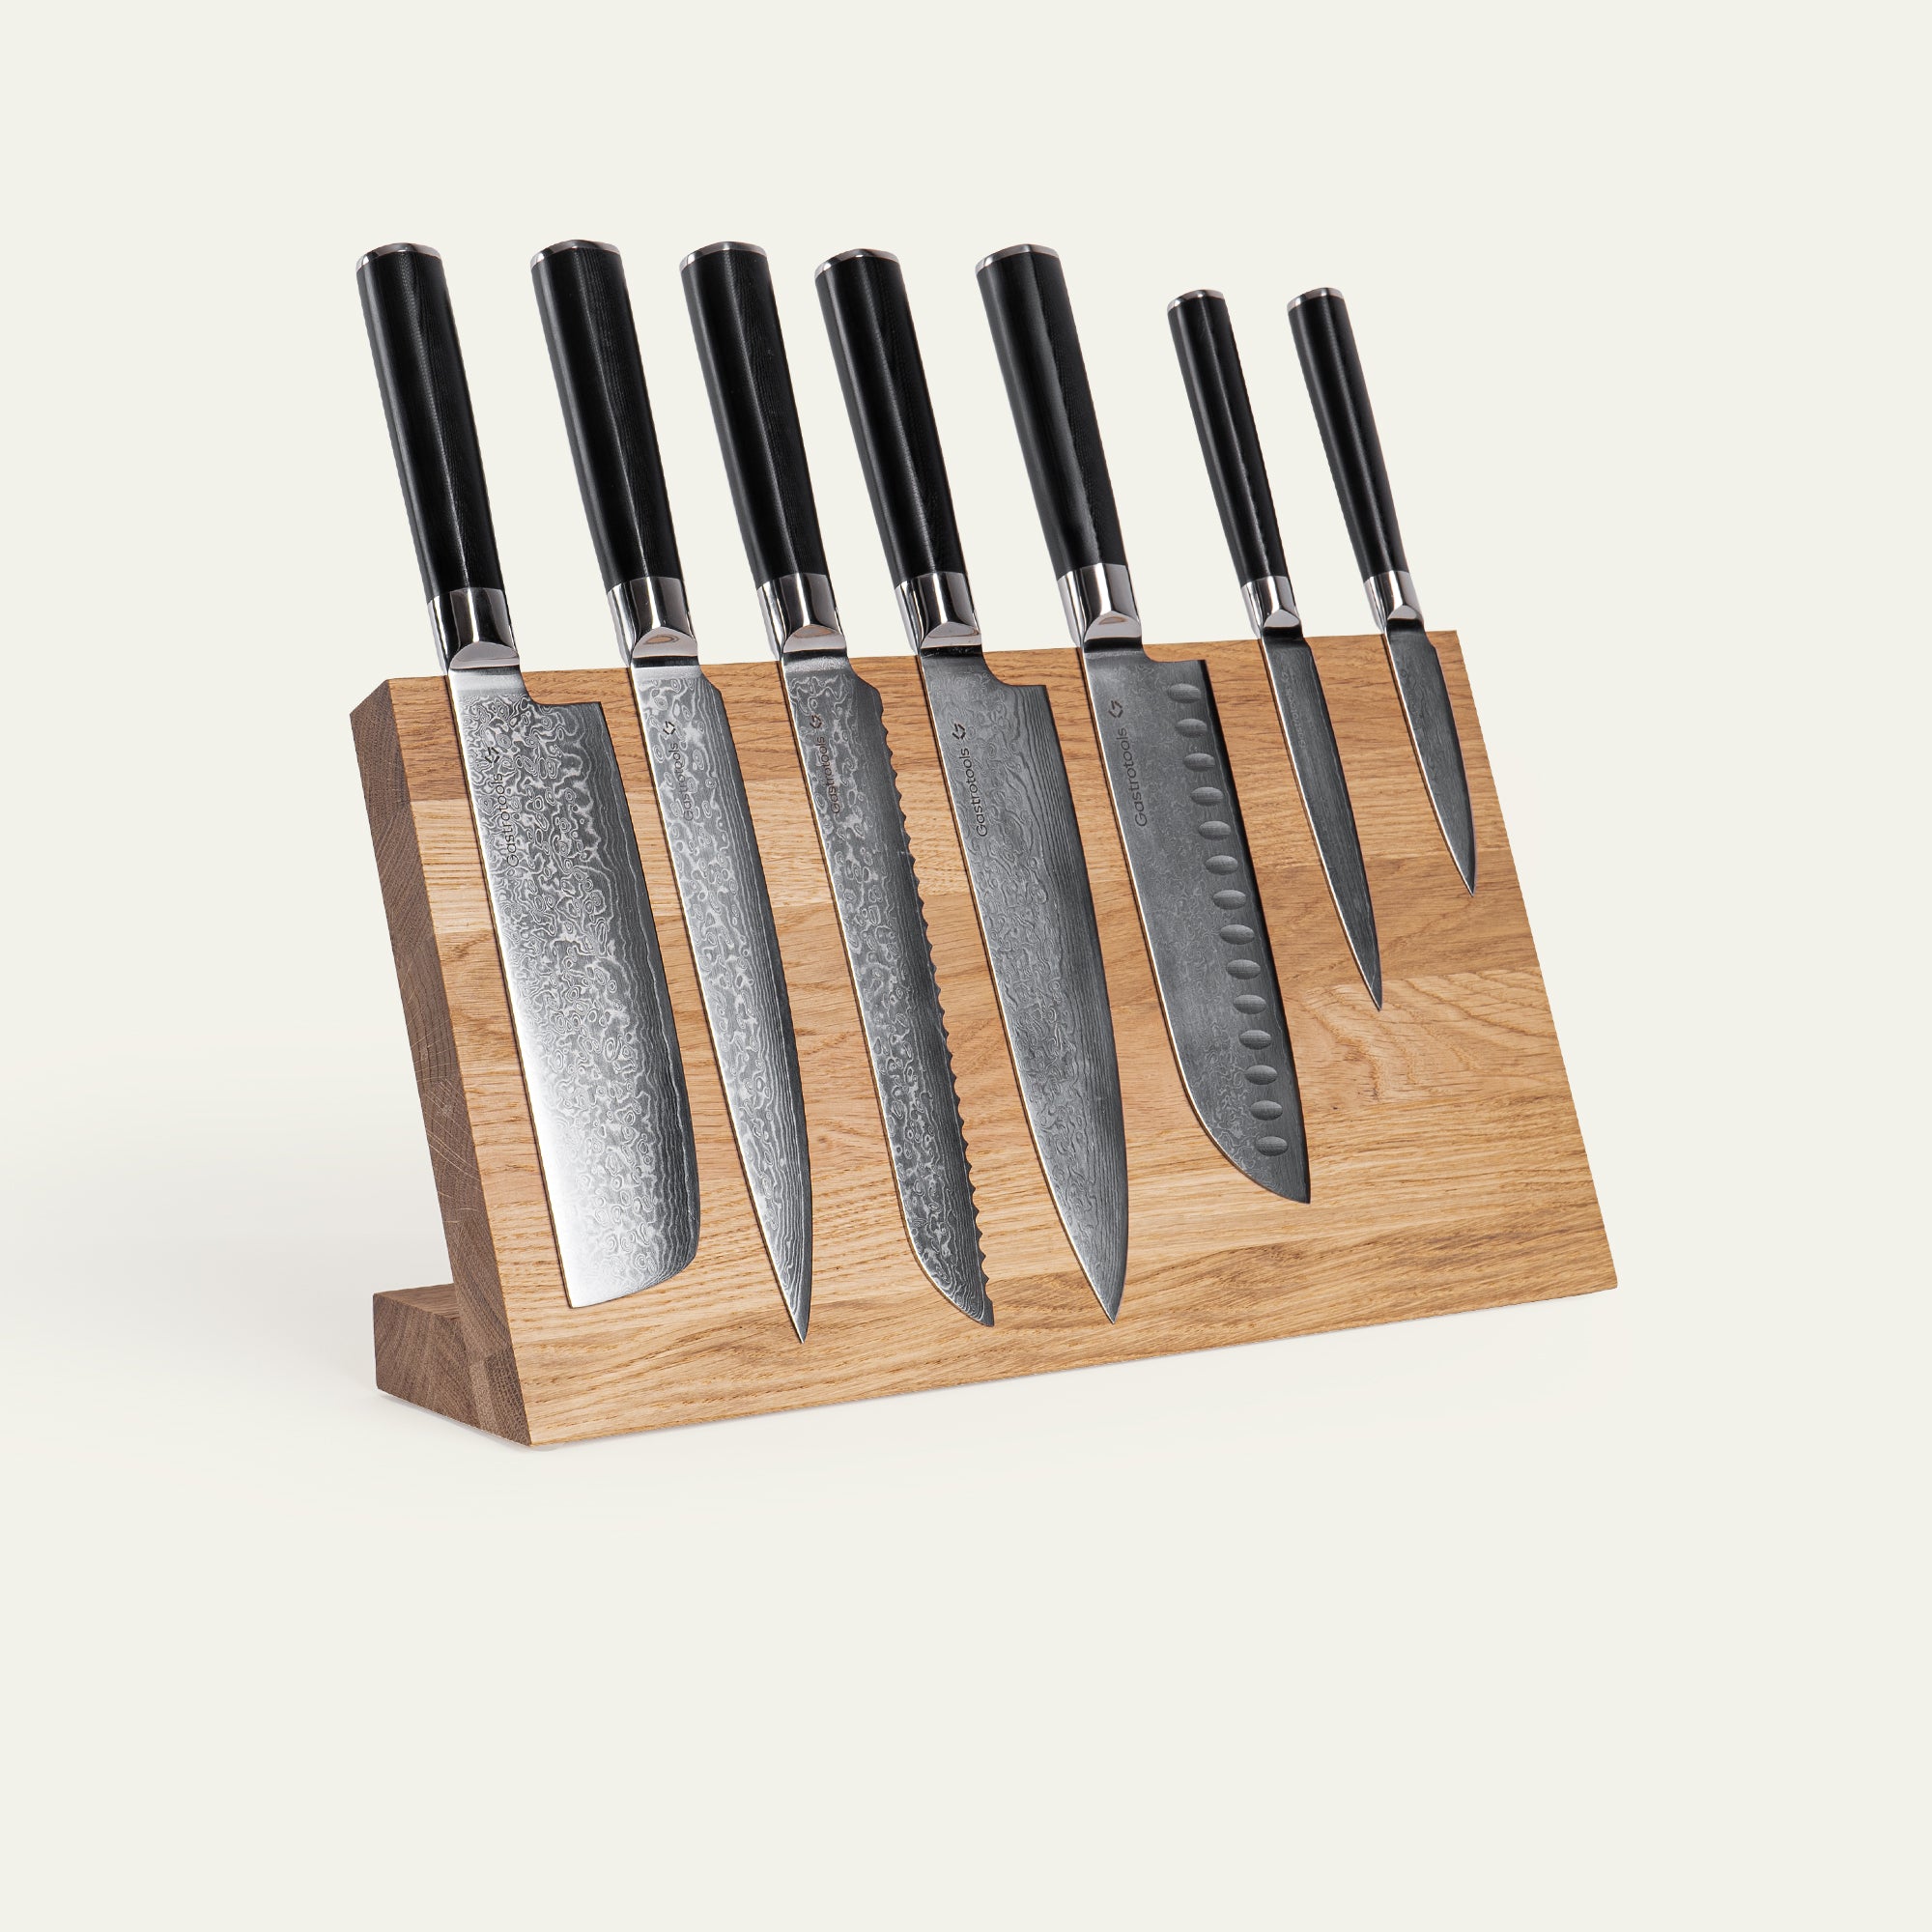 Knivblok - 7 knive